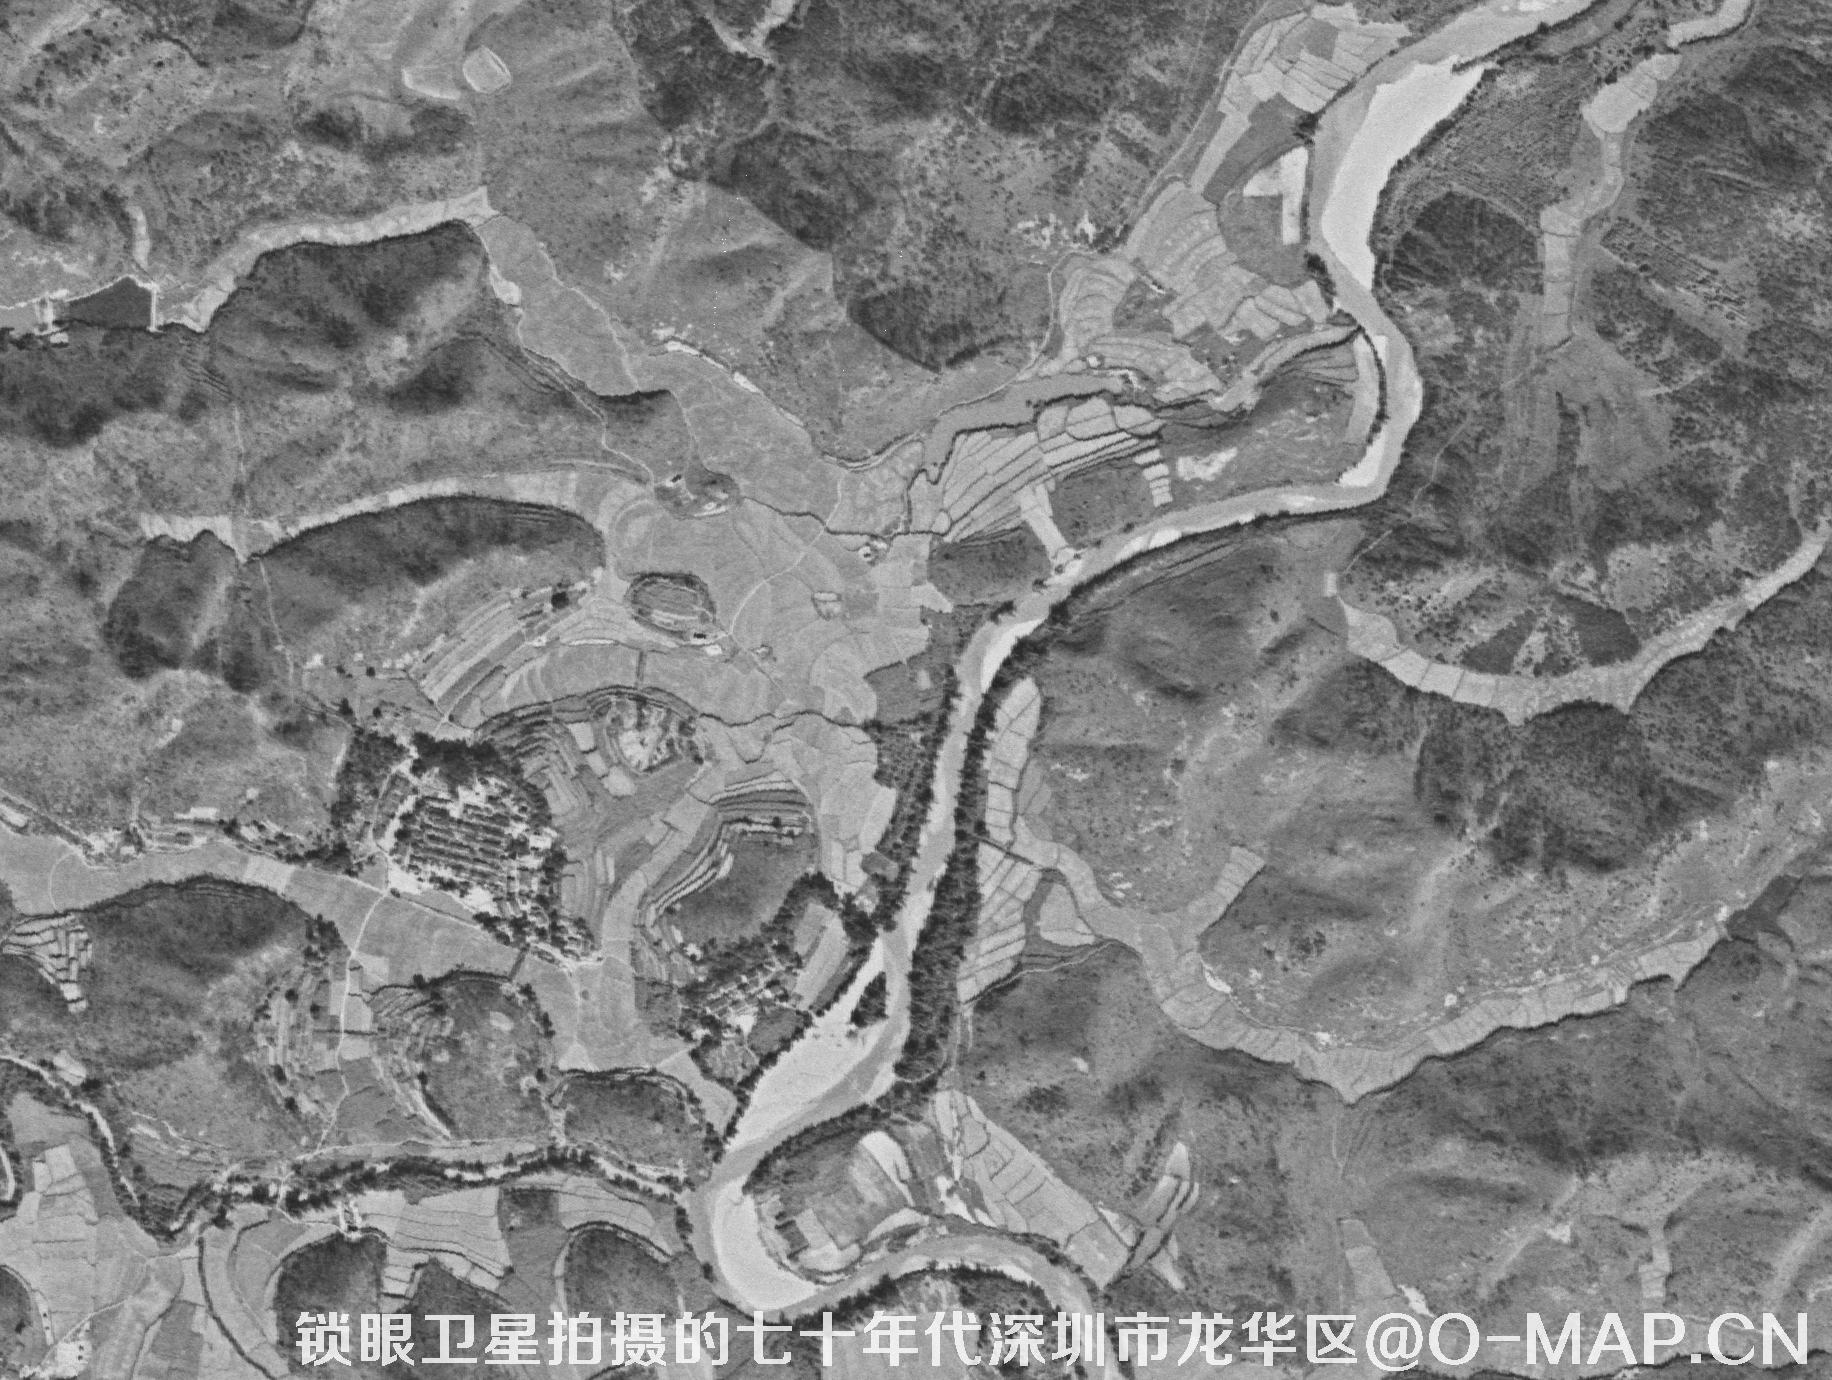 锁眼卫星拍摄的七十年代深圳市龙华区历史卫星图